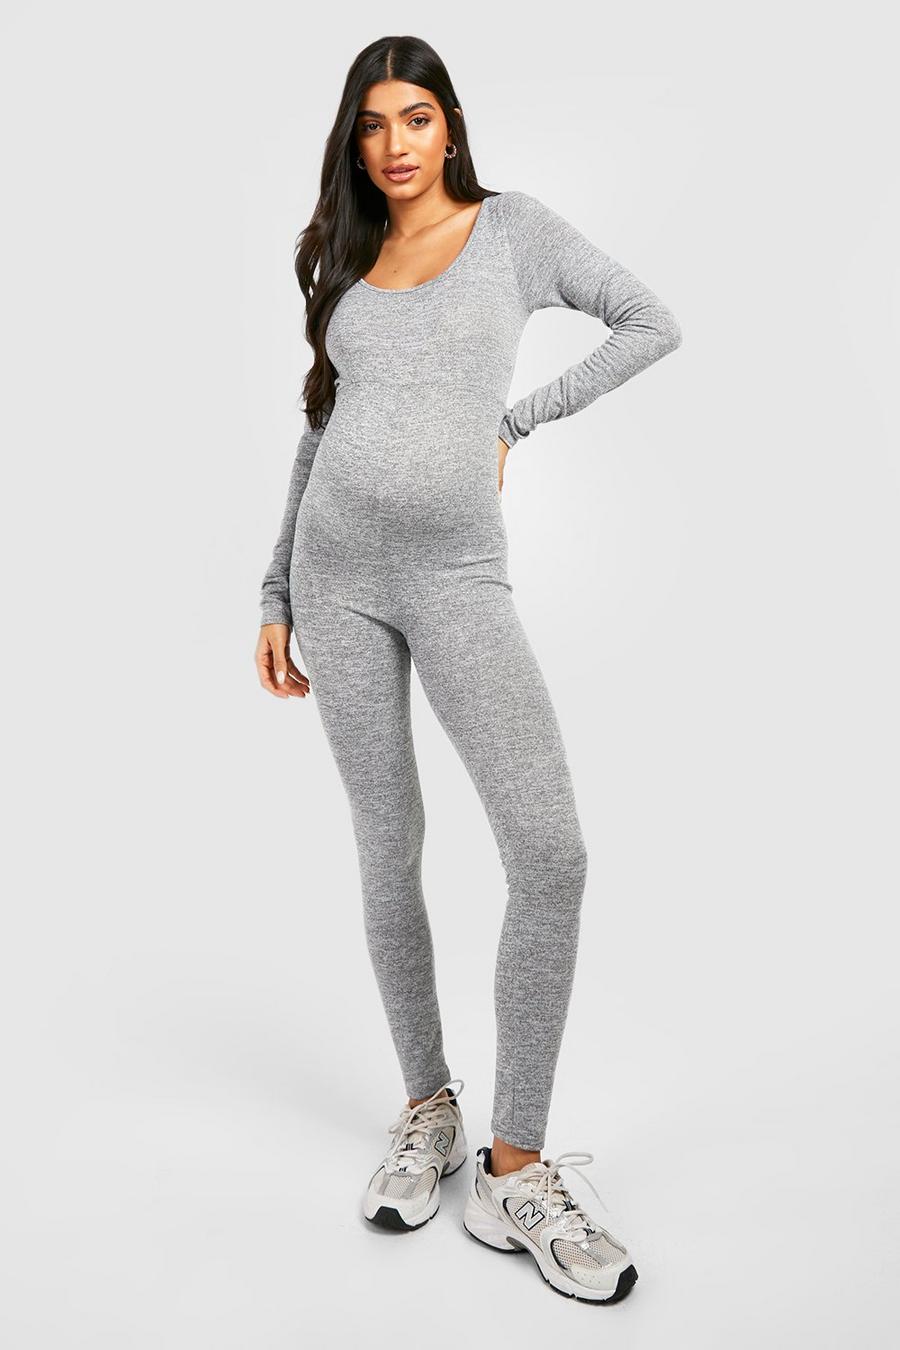 Grey marl Maternity Marl Knit Unitard Jumpsuit